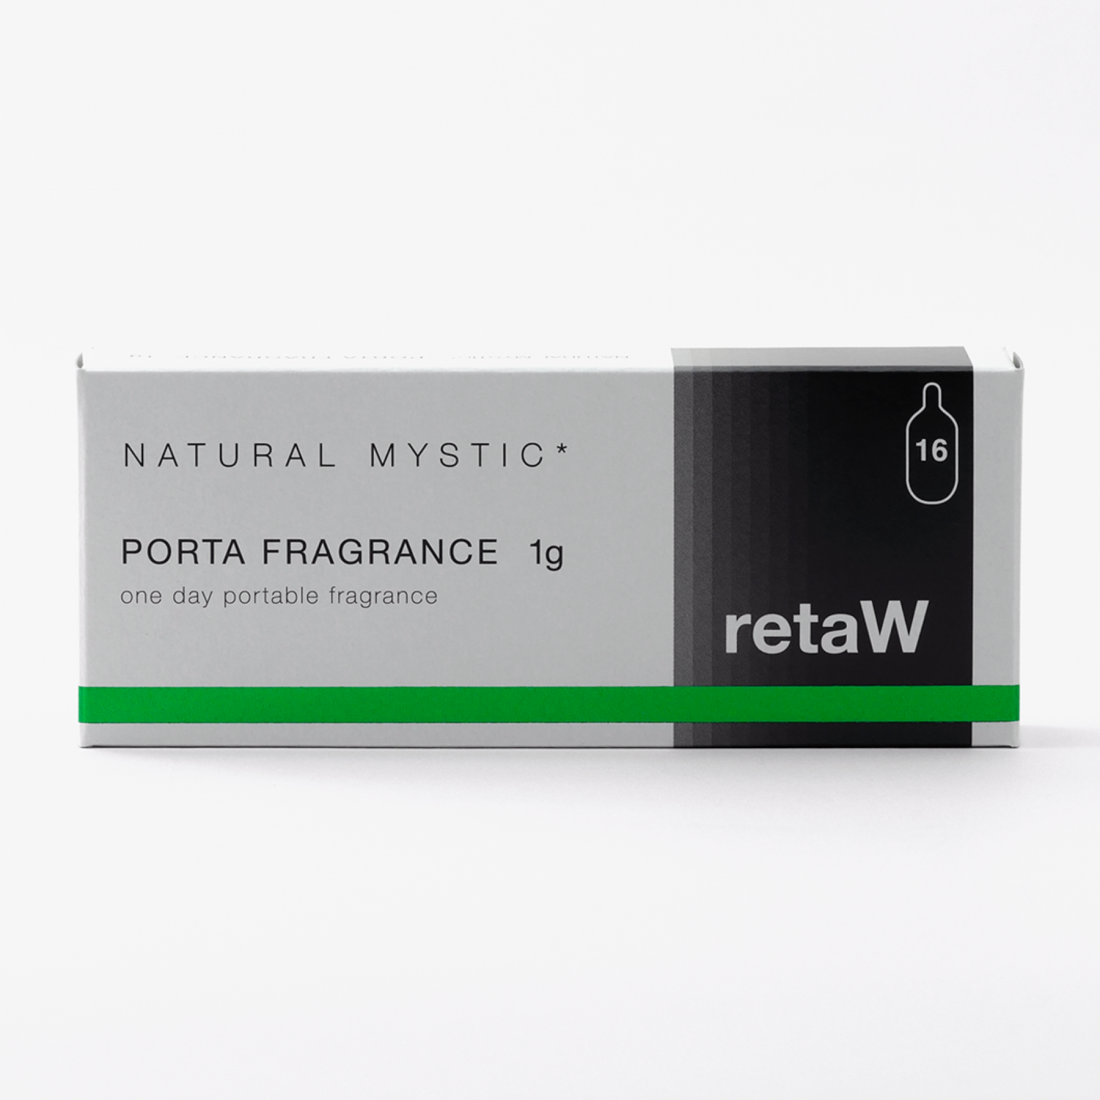 retaW/PORTA FRAGRANCE NATURAL MYSTIC*